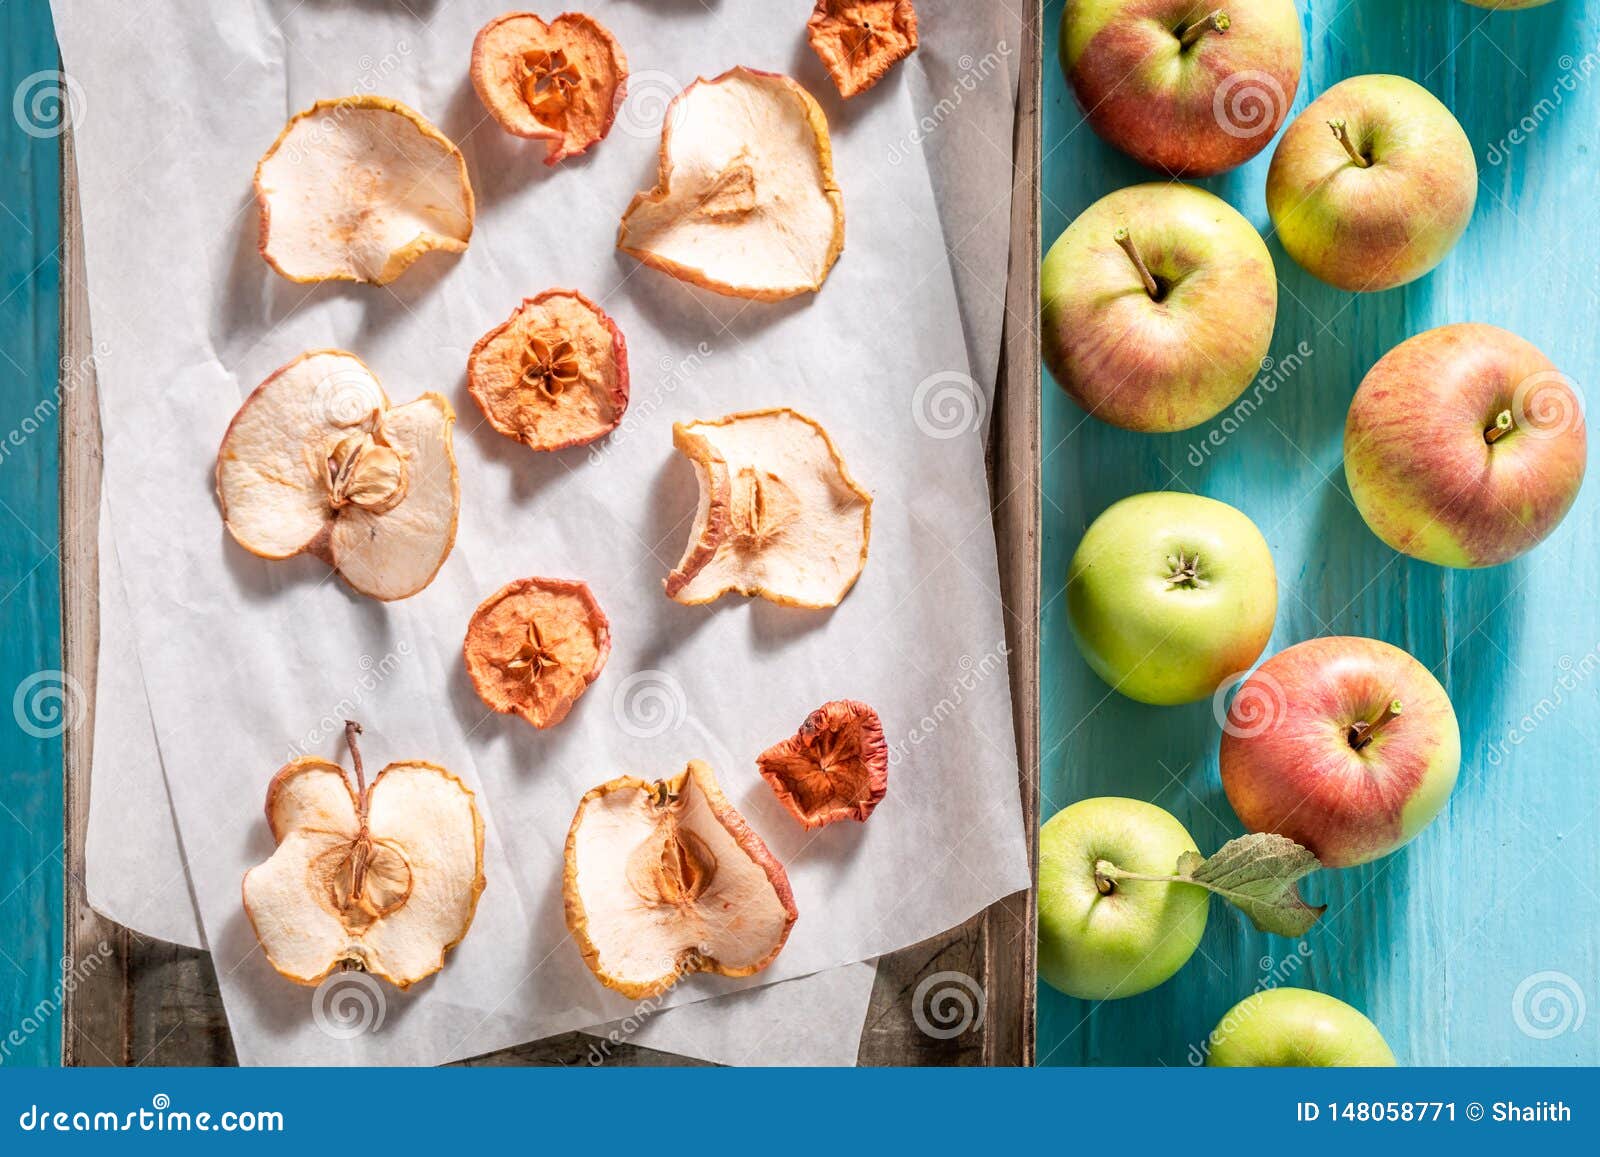 Сравни условия засушивания яблок на разных подносах. Посушить яблоки. Яблоки засушенные целиком. Опыт с засушиванием яблок. Как засушить яблоки в духовке.